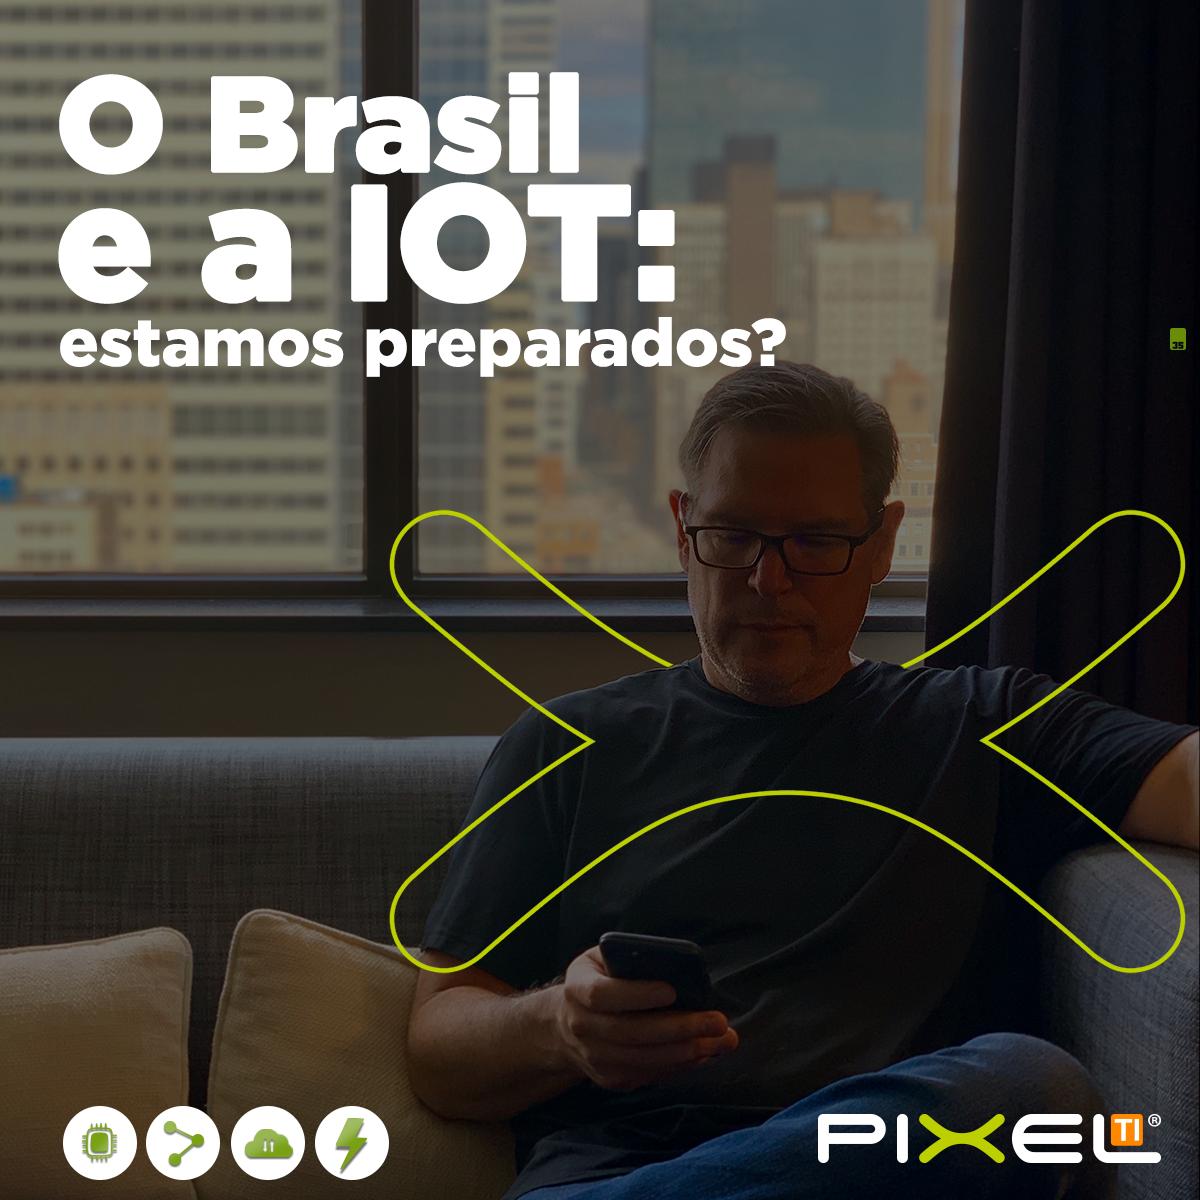 O Brasil e a IoT